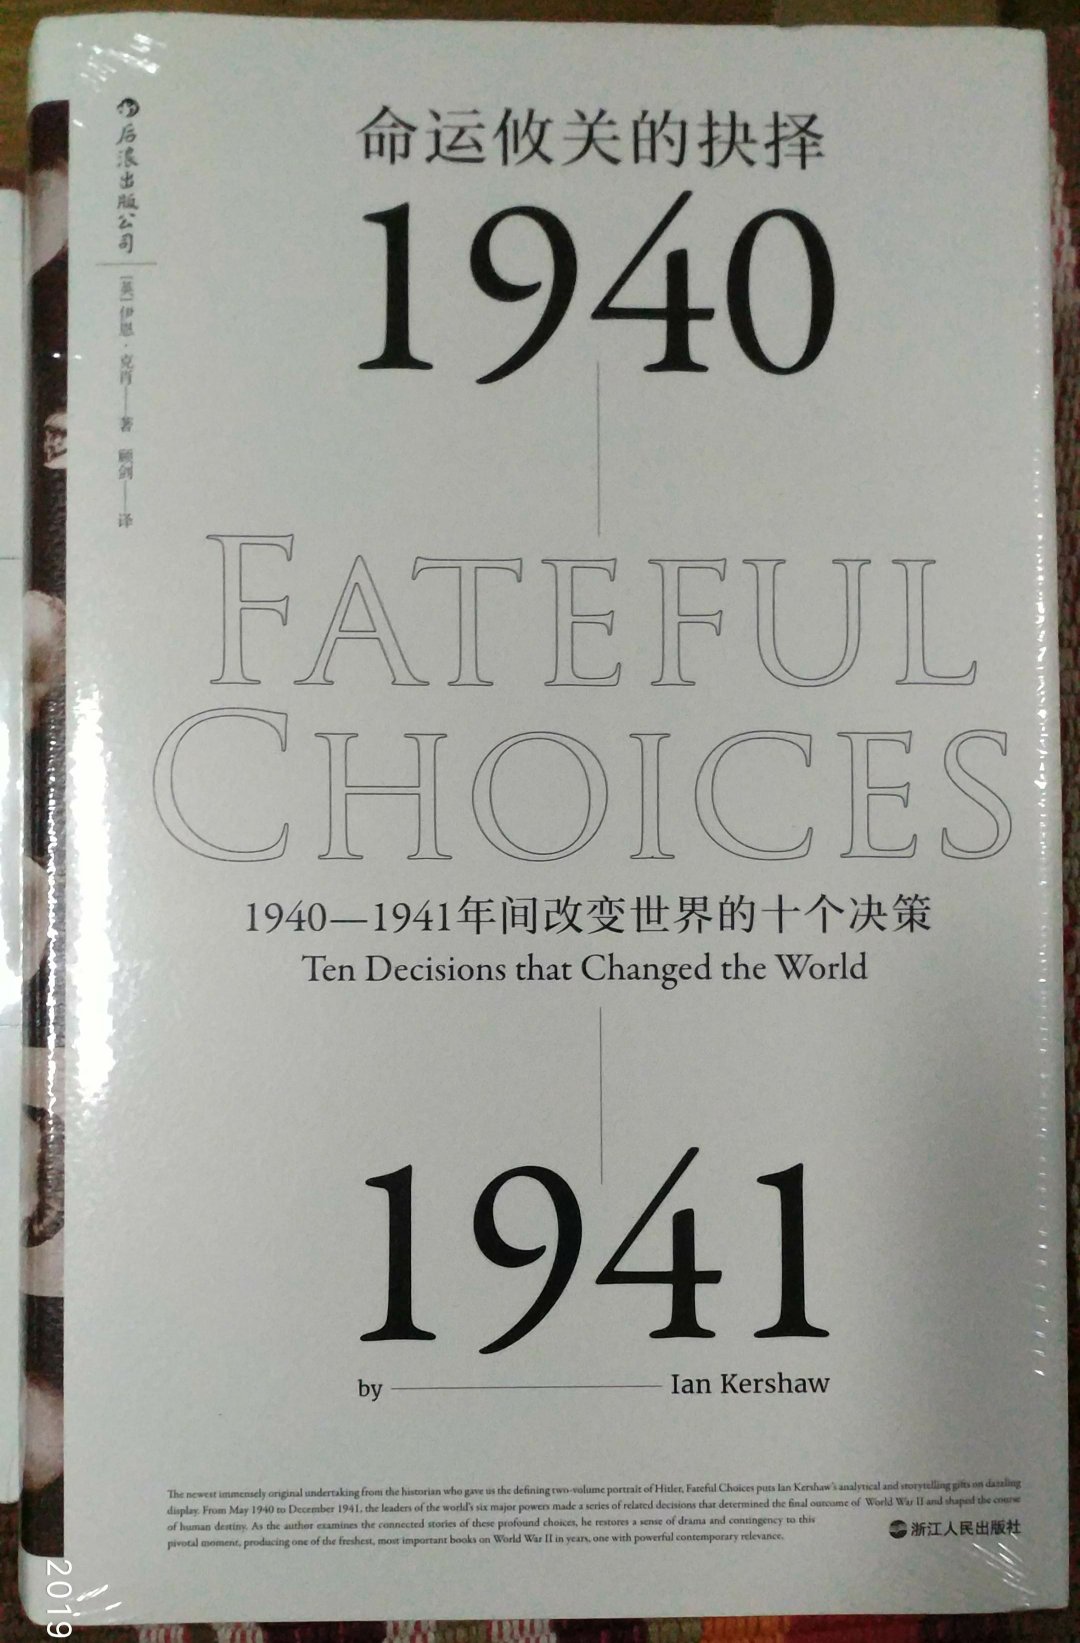 1940-1941年间改变世界的十个抉择